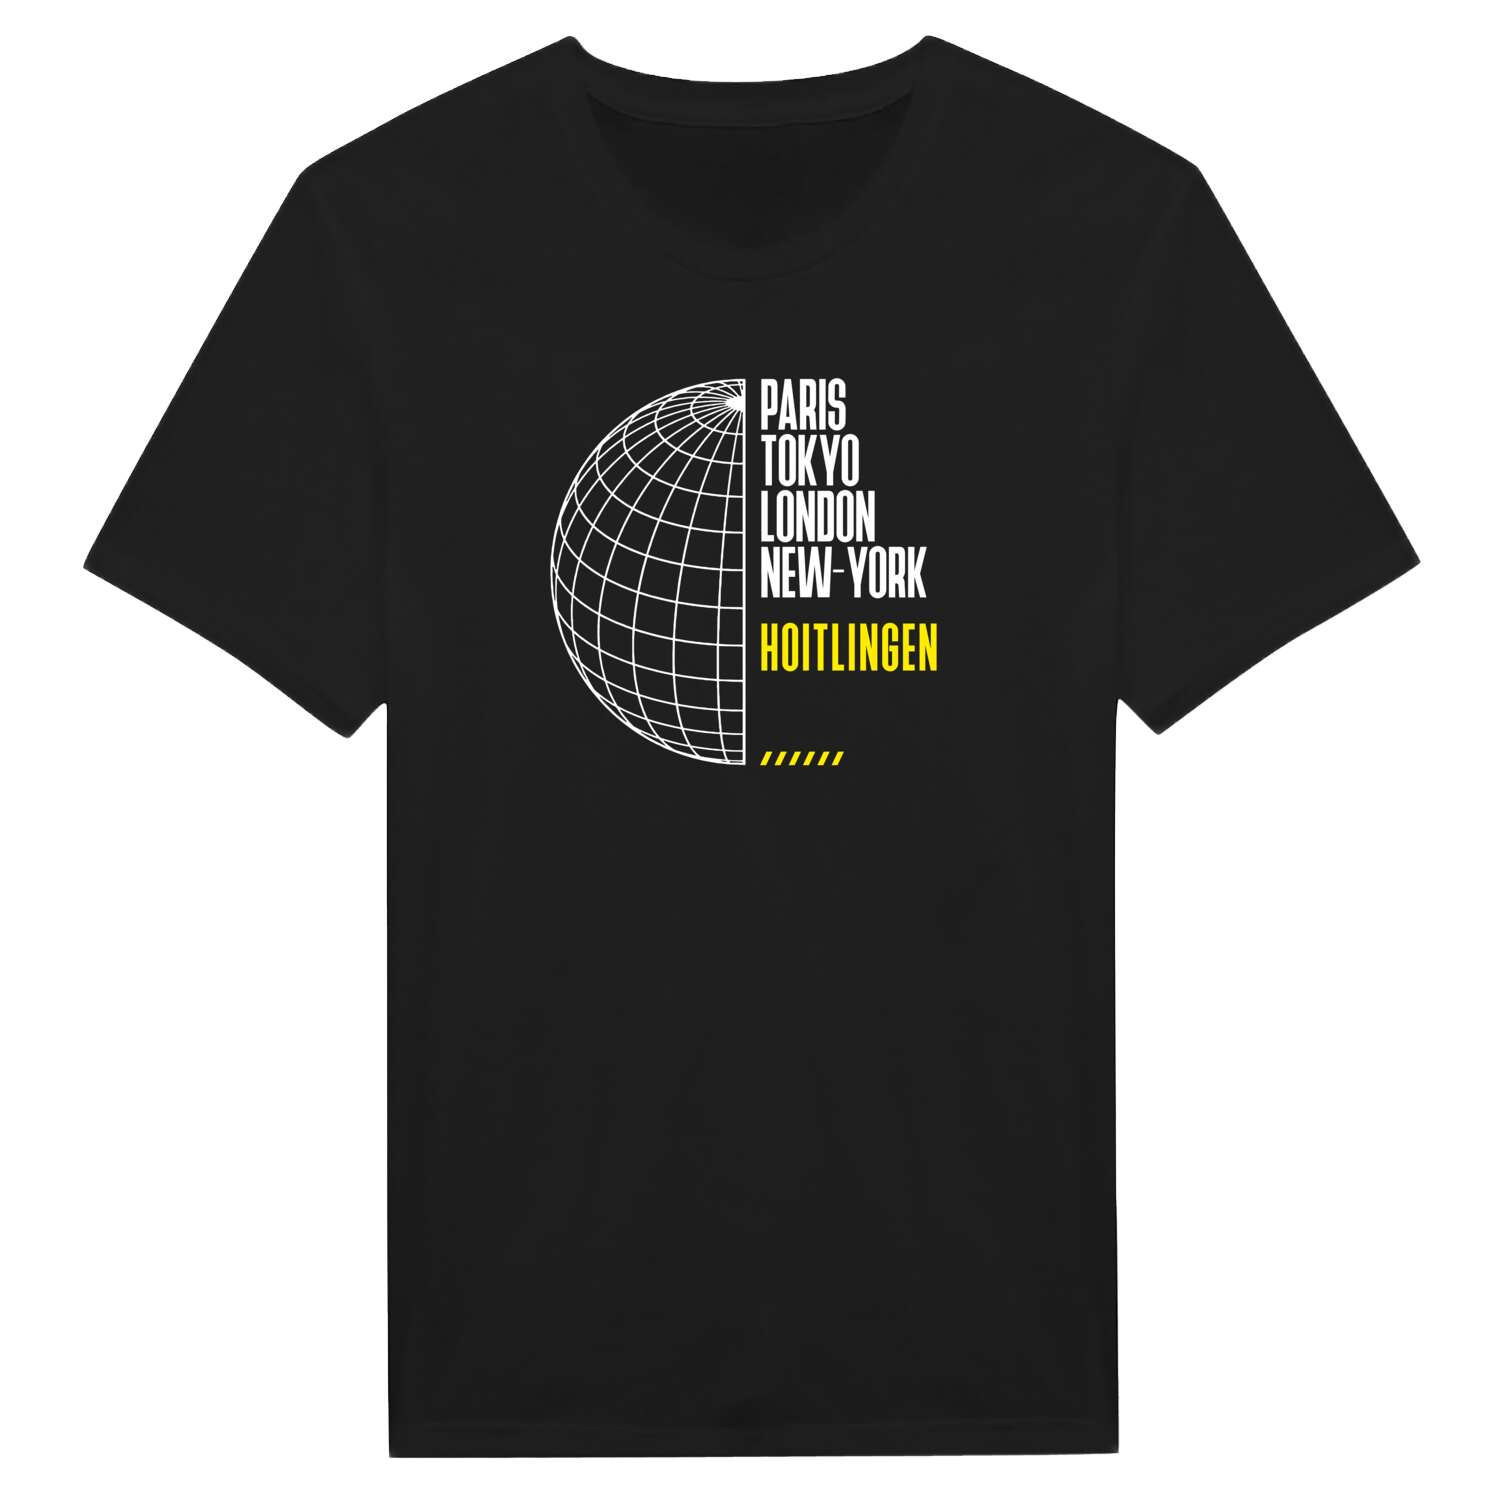 Hoitlingen T-Shirt »Paris Tokyo London«